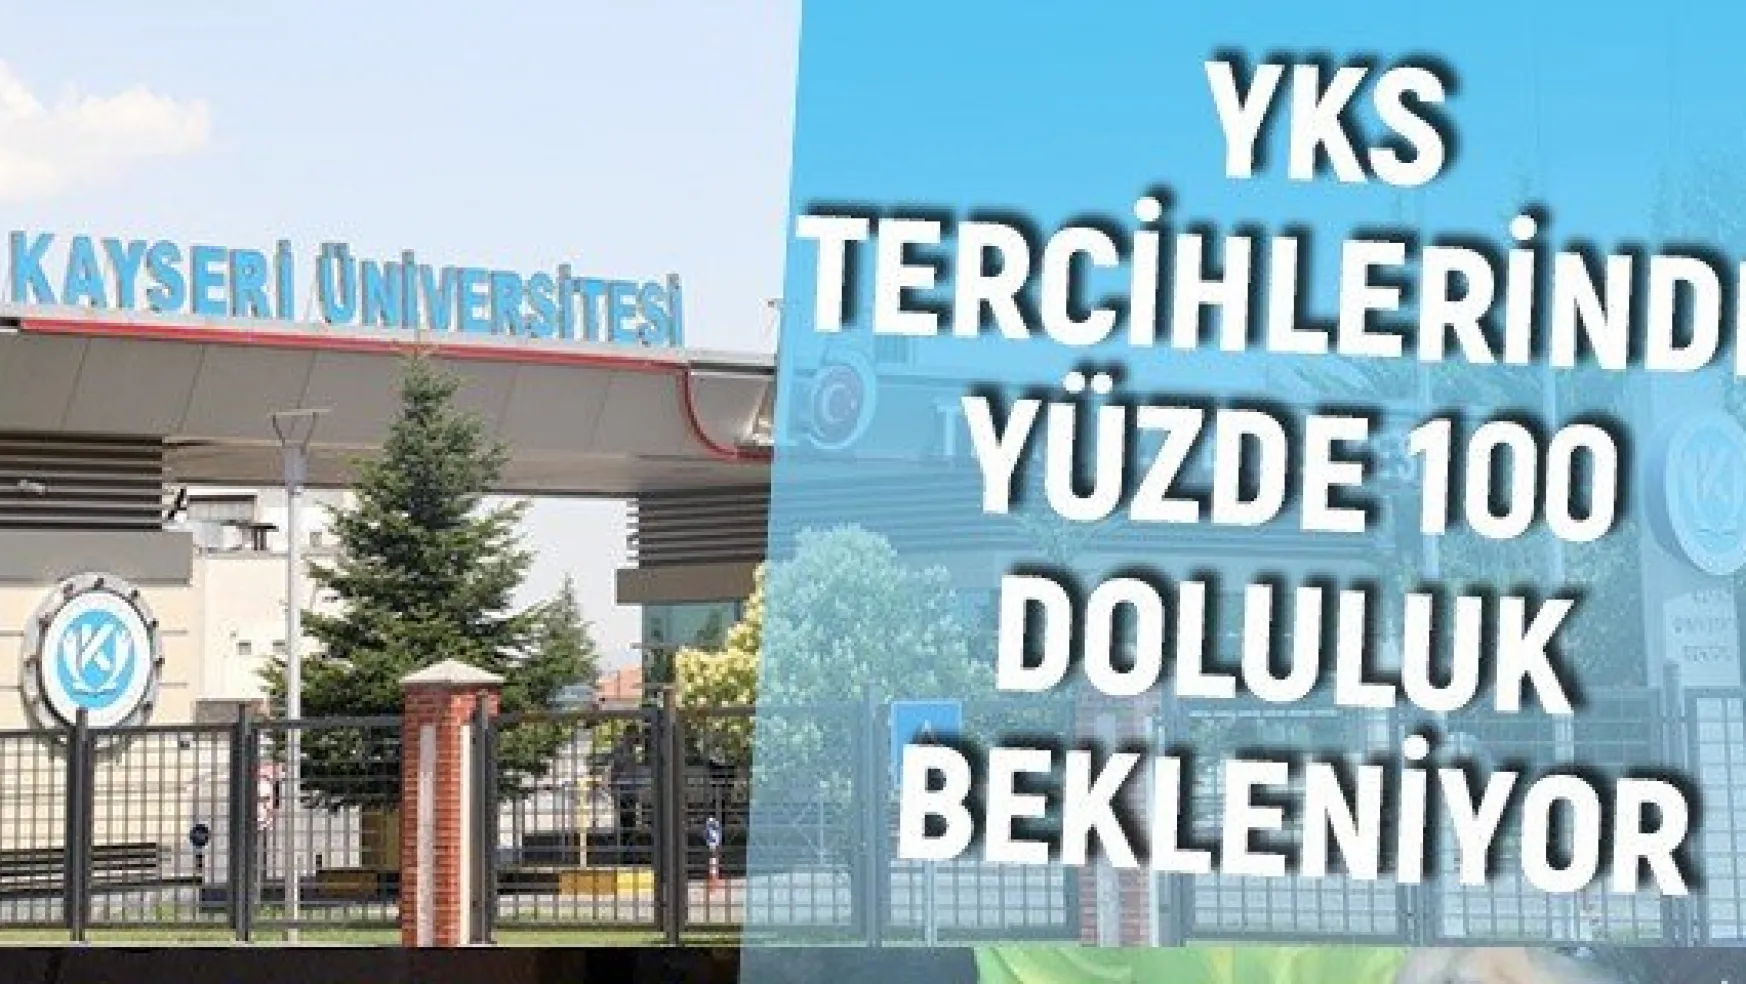 Kayseri Üniversitesi, YKS Tercihlerinde Yüzde 100 Doluluk Bekliyor